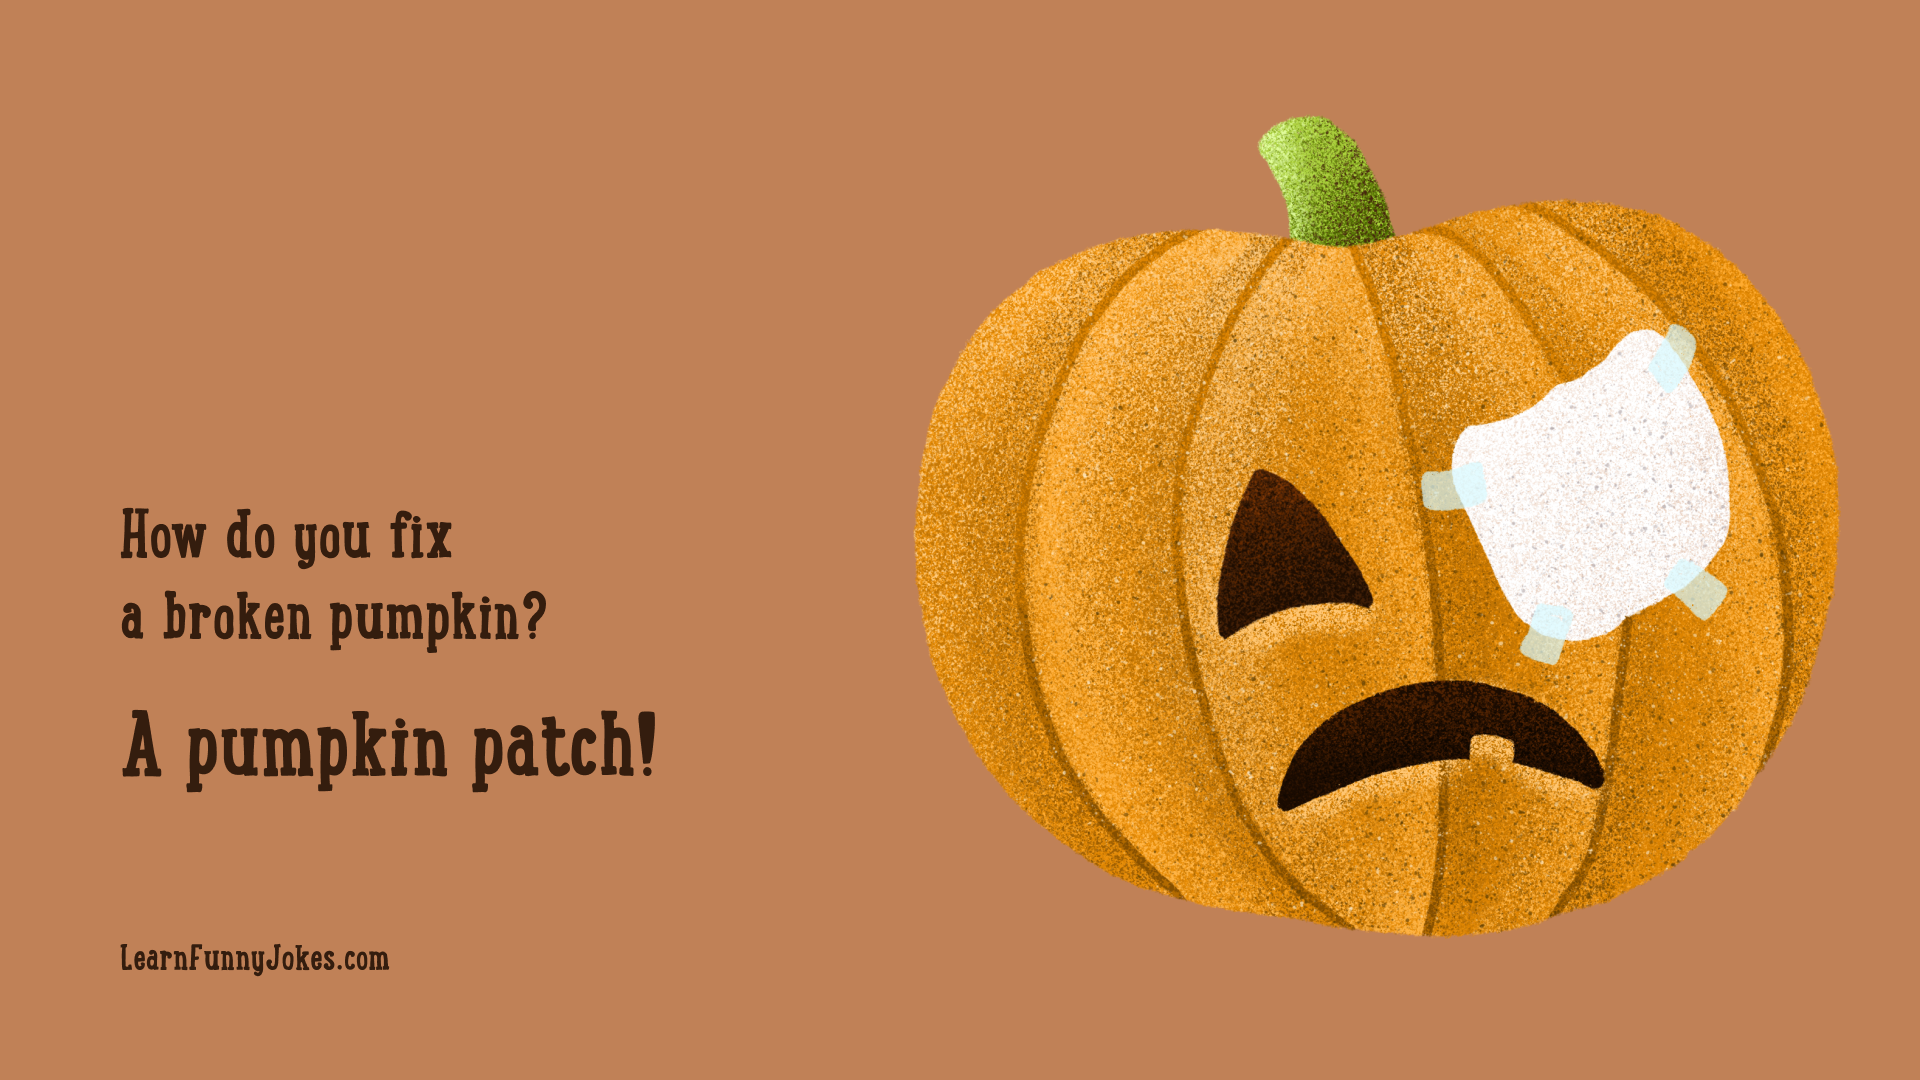 A pumpkin patch! 